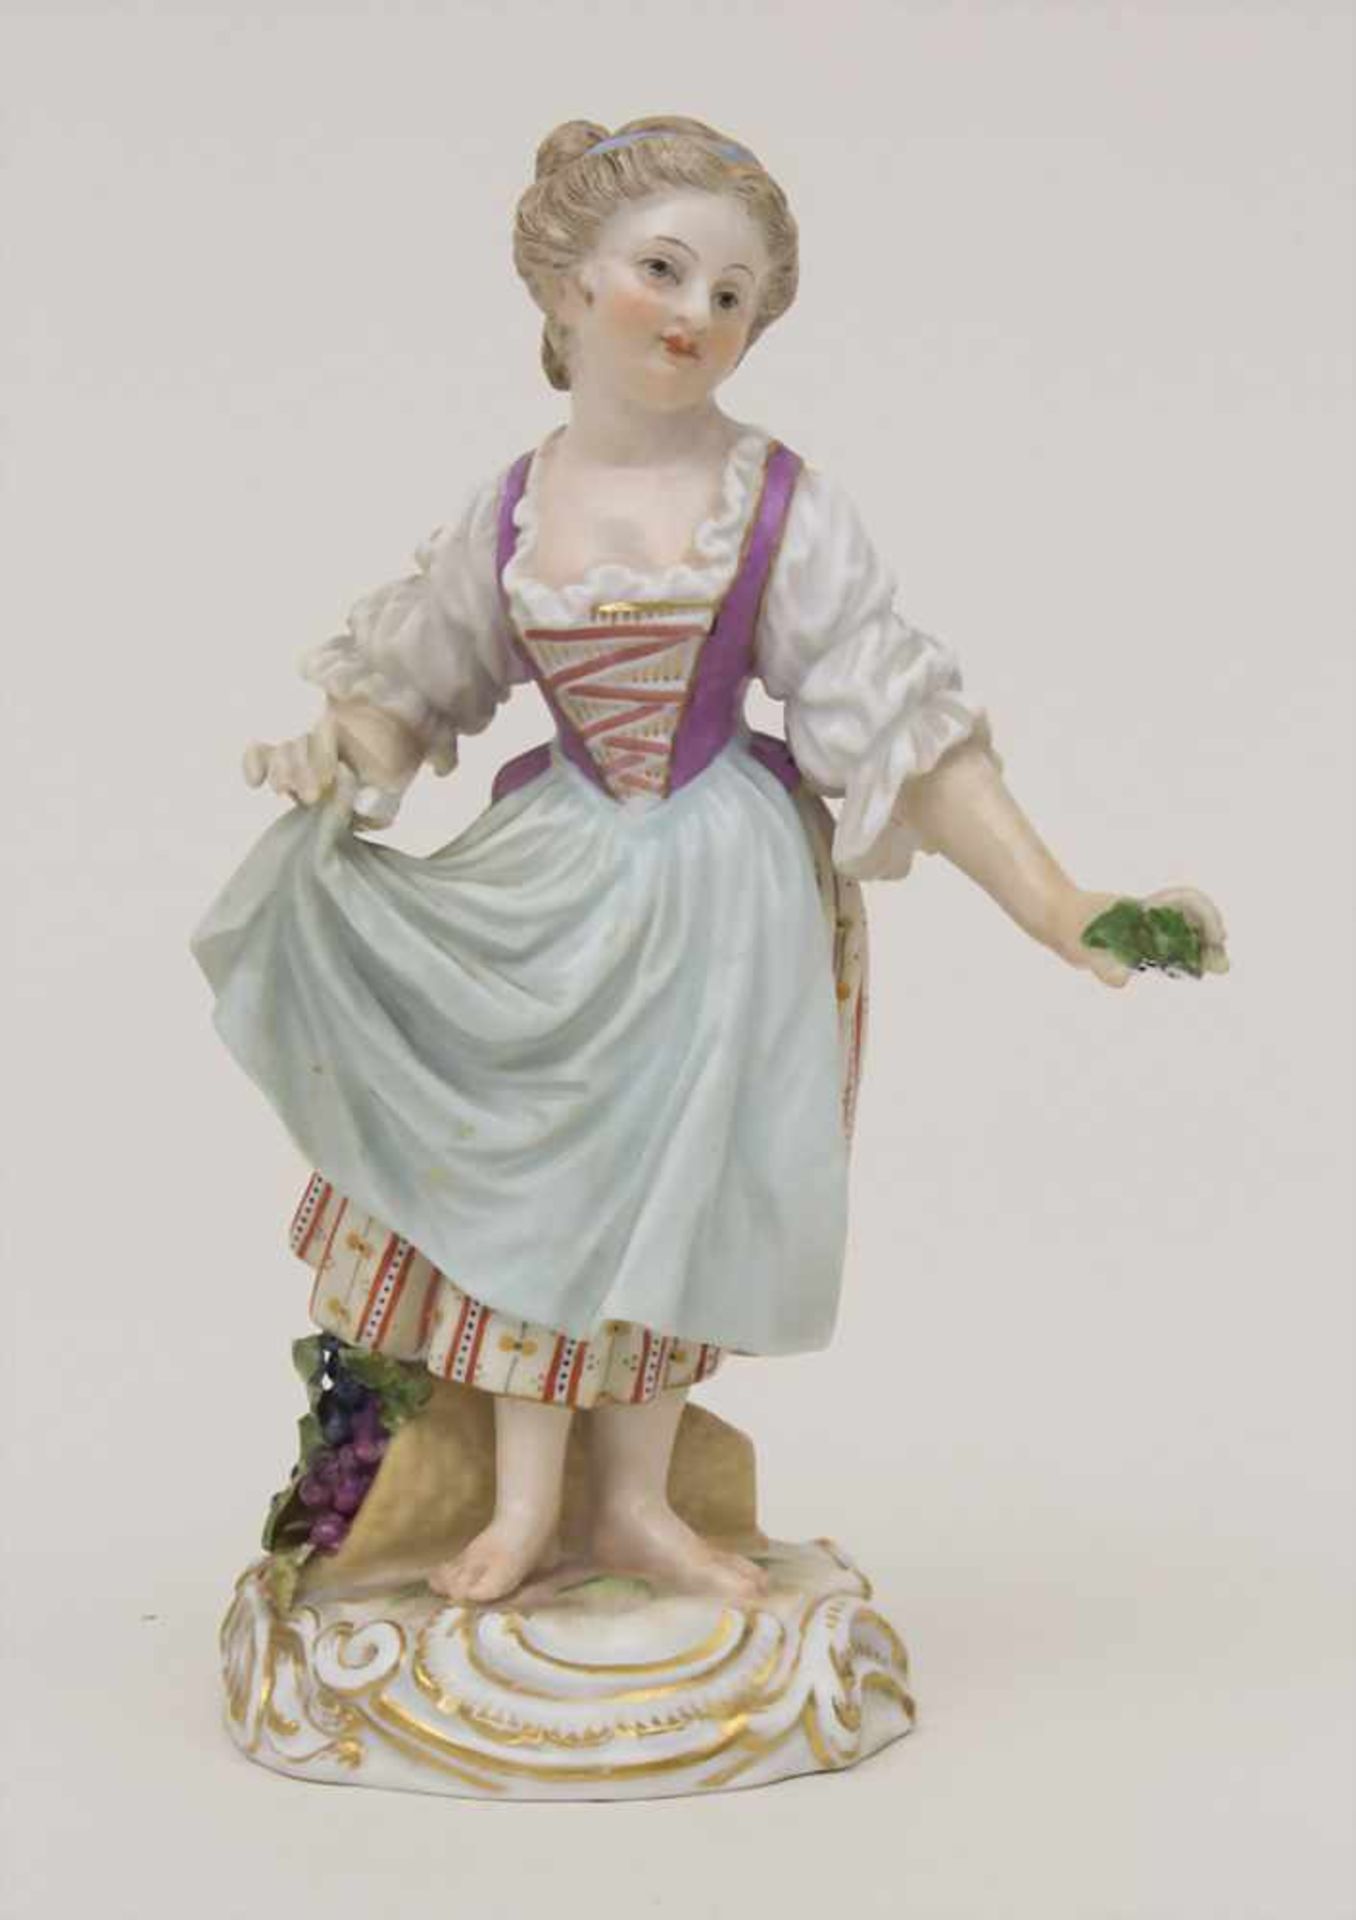 Gärtnerkind 'Mädchen mit Trauben' / A gardener child 'Girl with grapes', Meissen, um 1860Material: